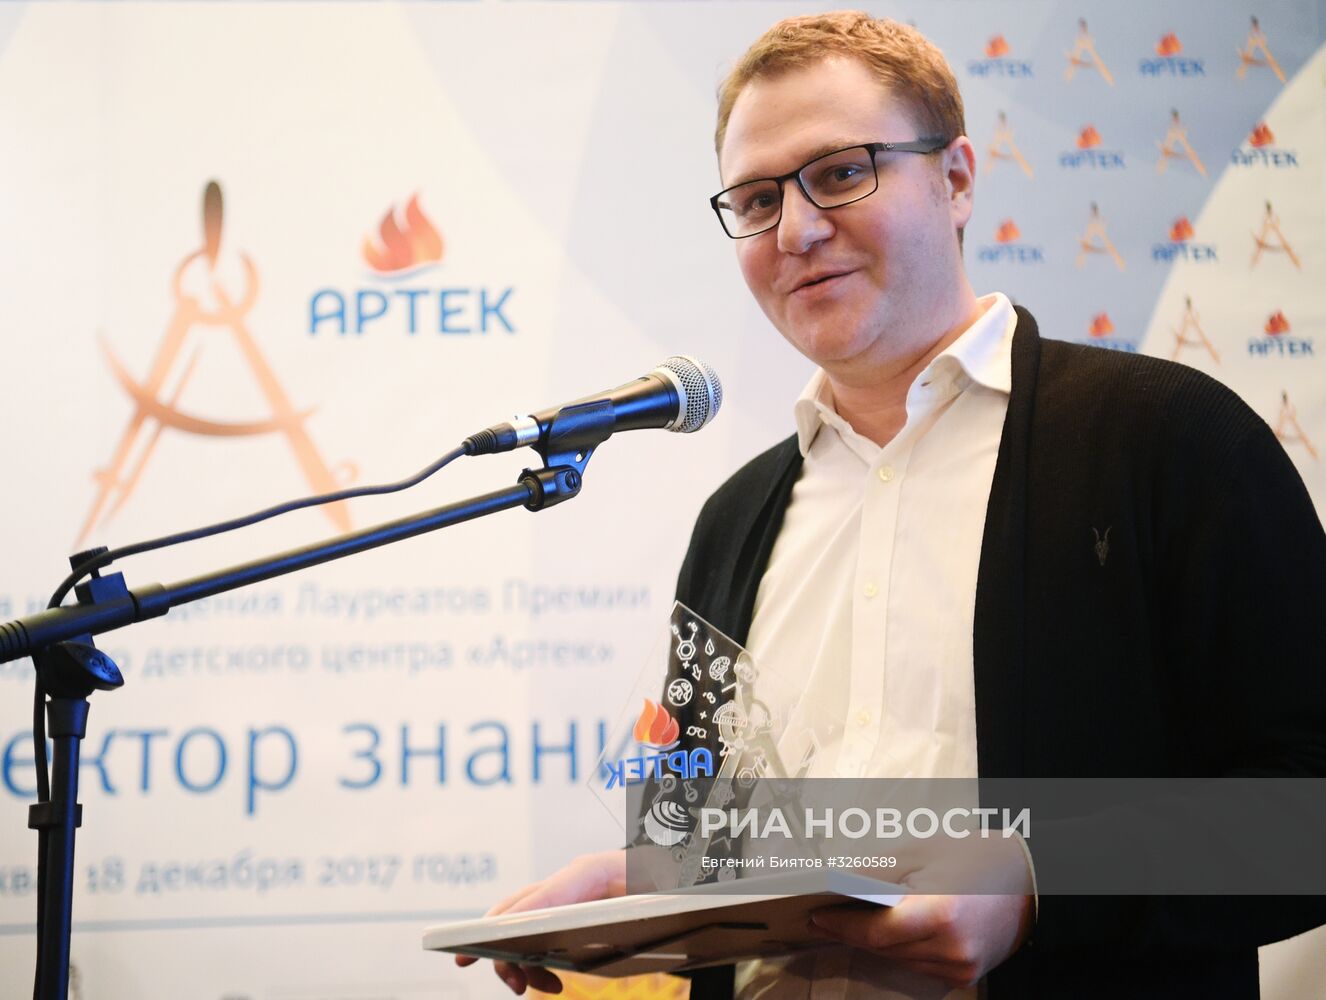 МИА "Россия сегодня" получило награду МДЦ "Артек" за лучший образовательный проект